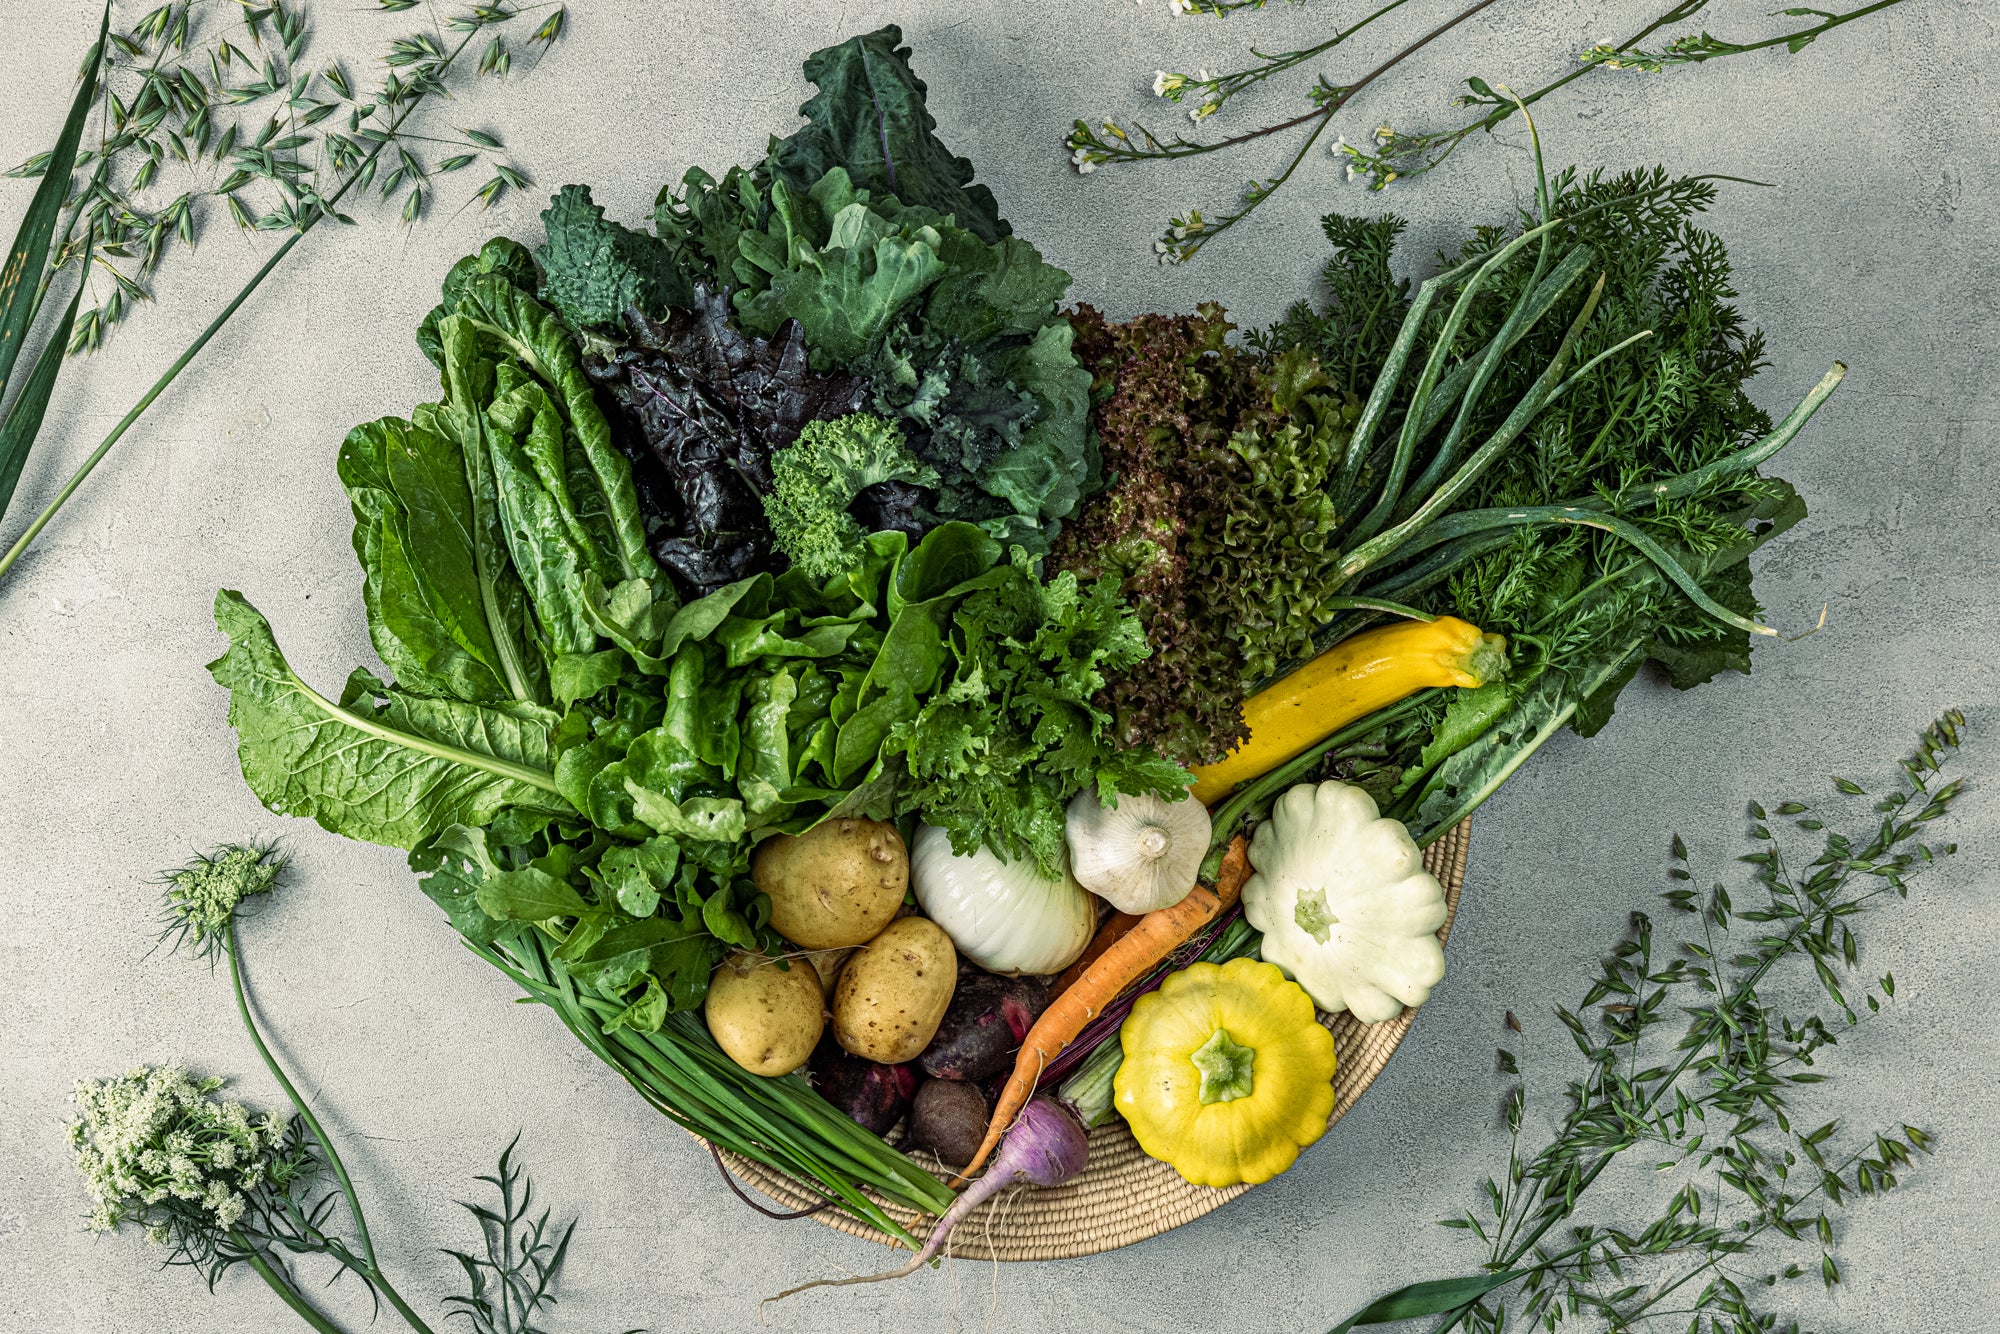 FUUSHIKAorganic　宅配野菜【定期便とお試し便と選べます。環境に配慮された旬のお野菜】　–